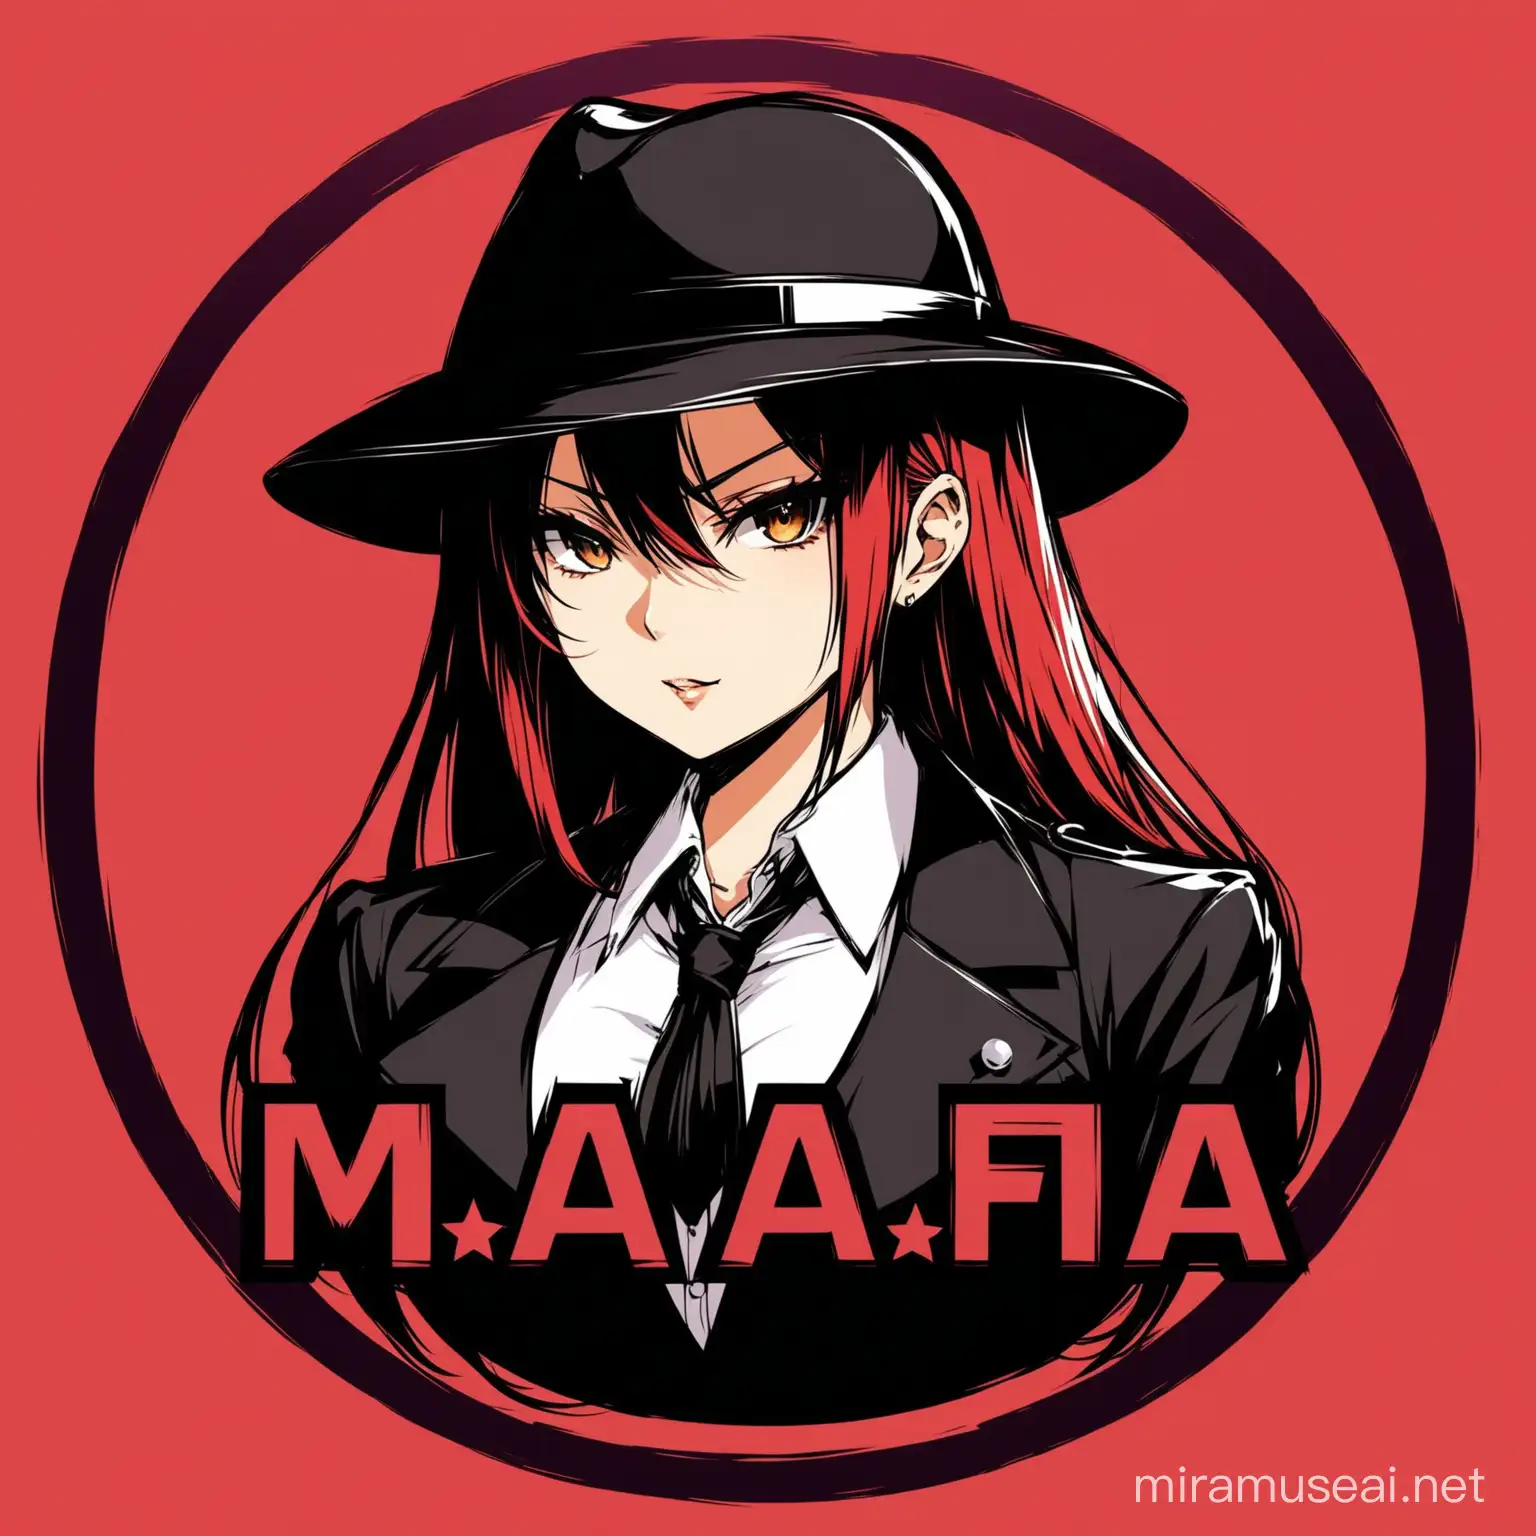 Anime Girl Mafia Emblem Stylish Logo Design with One Character